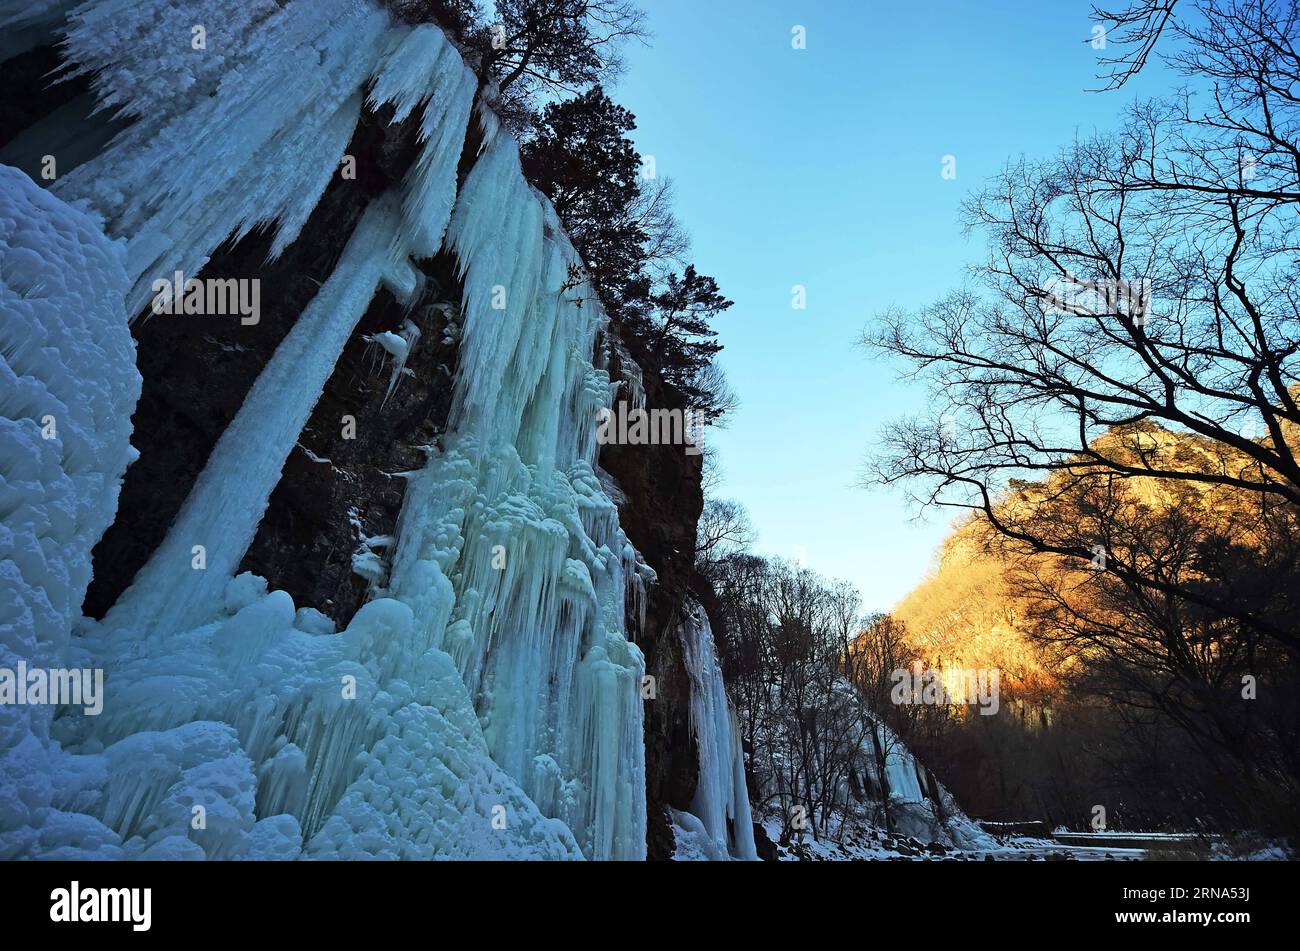 EIS-Wasserfälle im Nordosten Chinas (160107) -- BENXI, le 6 janvier 2016 -- la photo prise le 6 janvier 2016 montre le paysage de cascades glacées au point pittoresque de la montagne Guanmen dans la ville de Benxi, dans la province du Liaoning au nord-est de la Chine. Les cascades de glace ici ont attiré un bon nombre de touristes.) (lfj) CHINA-LIAONING-ICY FALLS (CN) YangxQing PUBLICATIONxNOTxINxCHN Ice Waterfalls dans le nord-est de la Chine 160107 Benxi Jan 6 2016 photo prise LE 6 2016 janvier montre le paysage des chutes d'eau glacées AU Guanmen Mountain Scenic Spot dans la ville de Benxi Nord-est Chine S Liaoning province Icy Water Falls ici a attiré un bon MA Banque D'Images